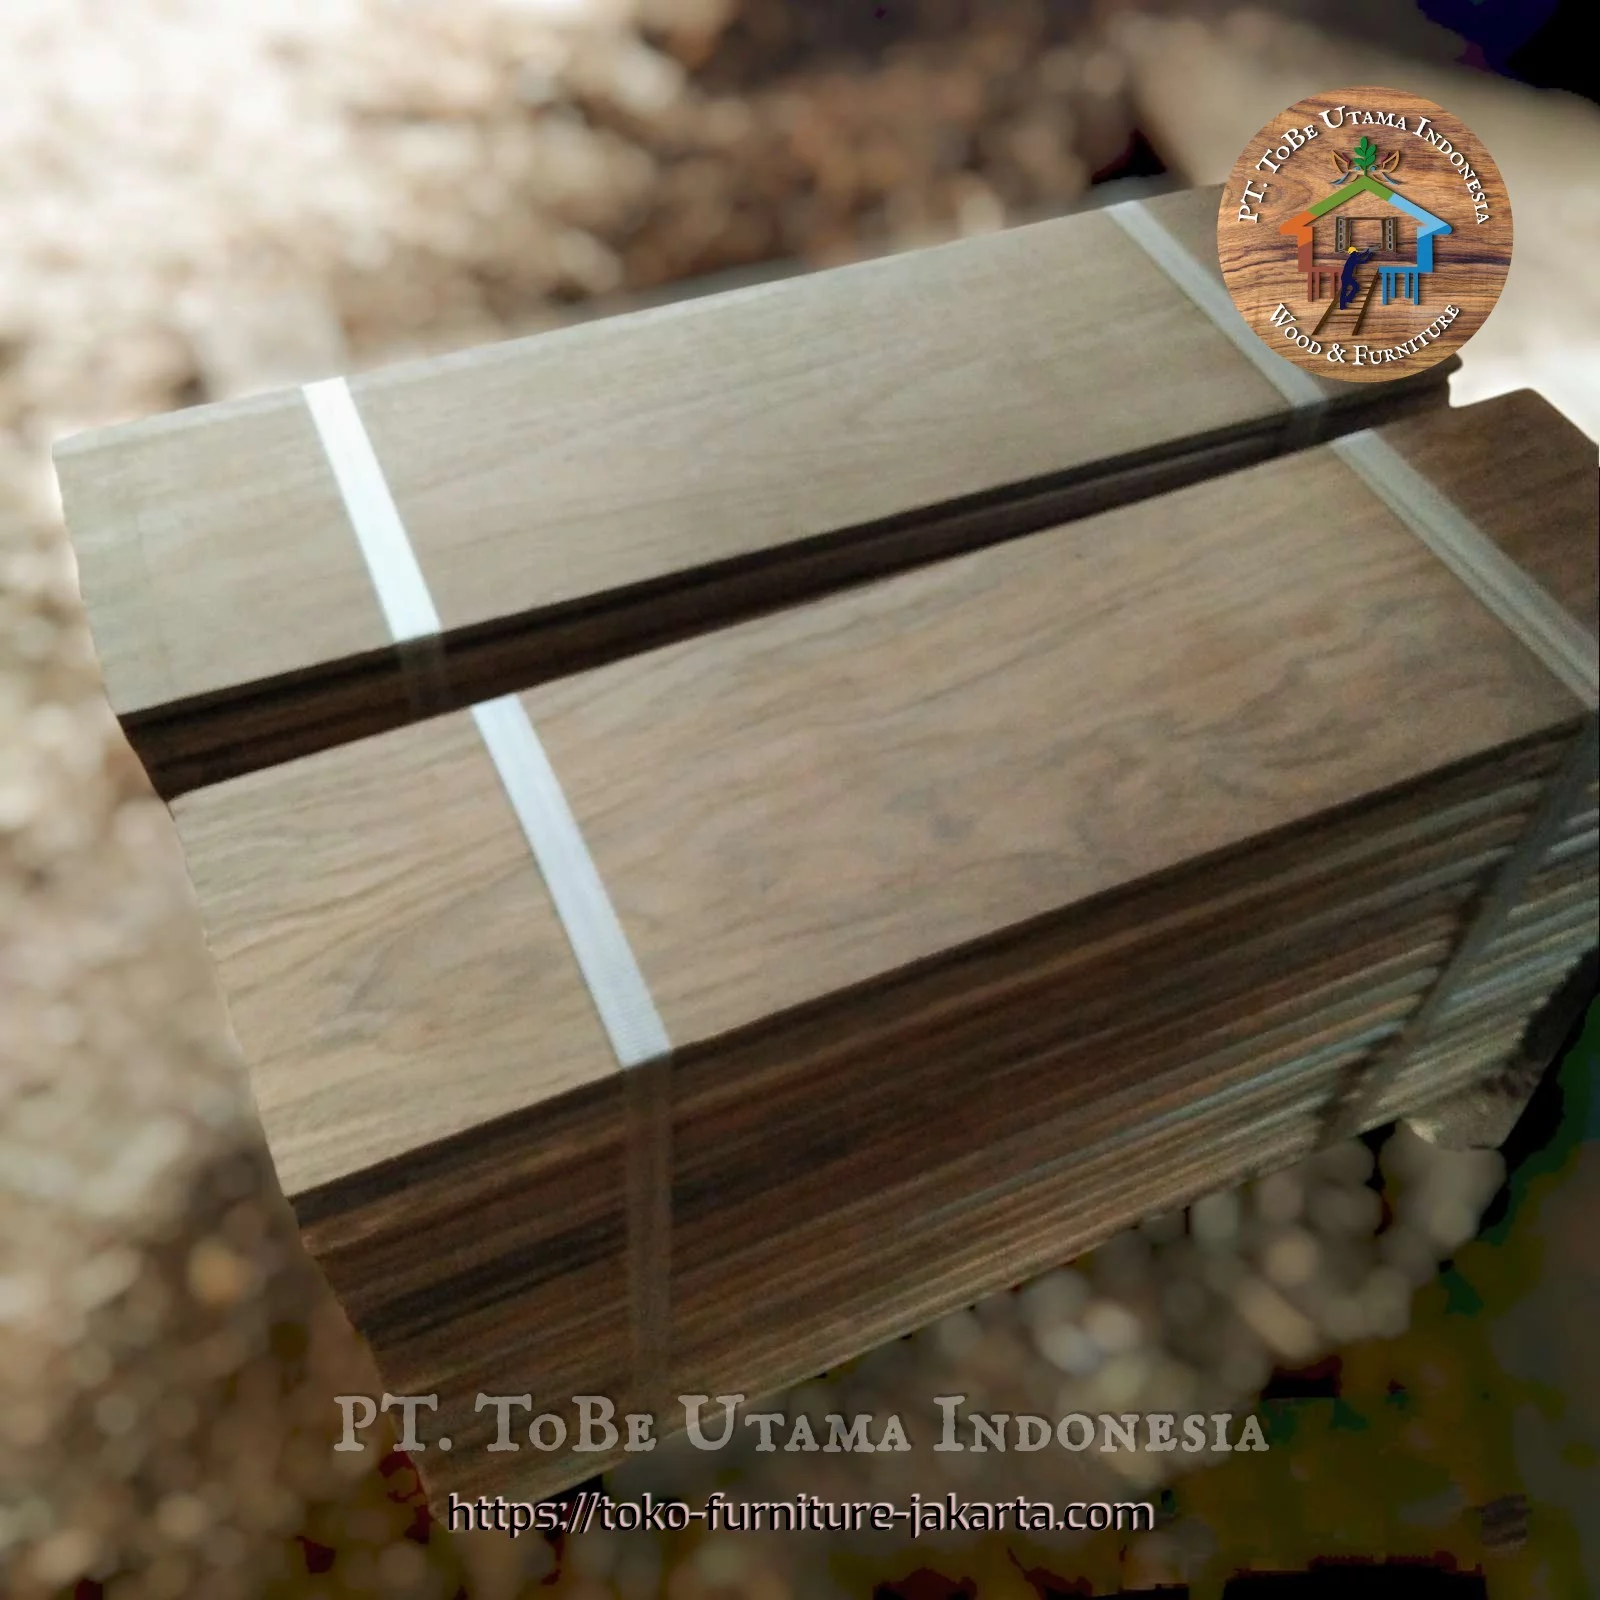 Planks & Decking/Flooring: Teakwood Boards made of teakwood (image 1 of 1).